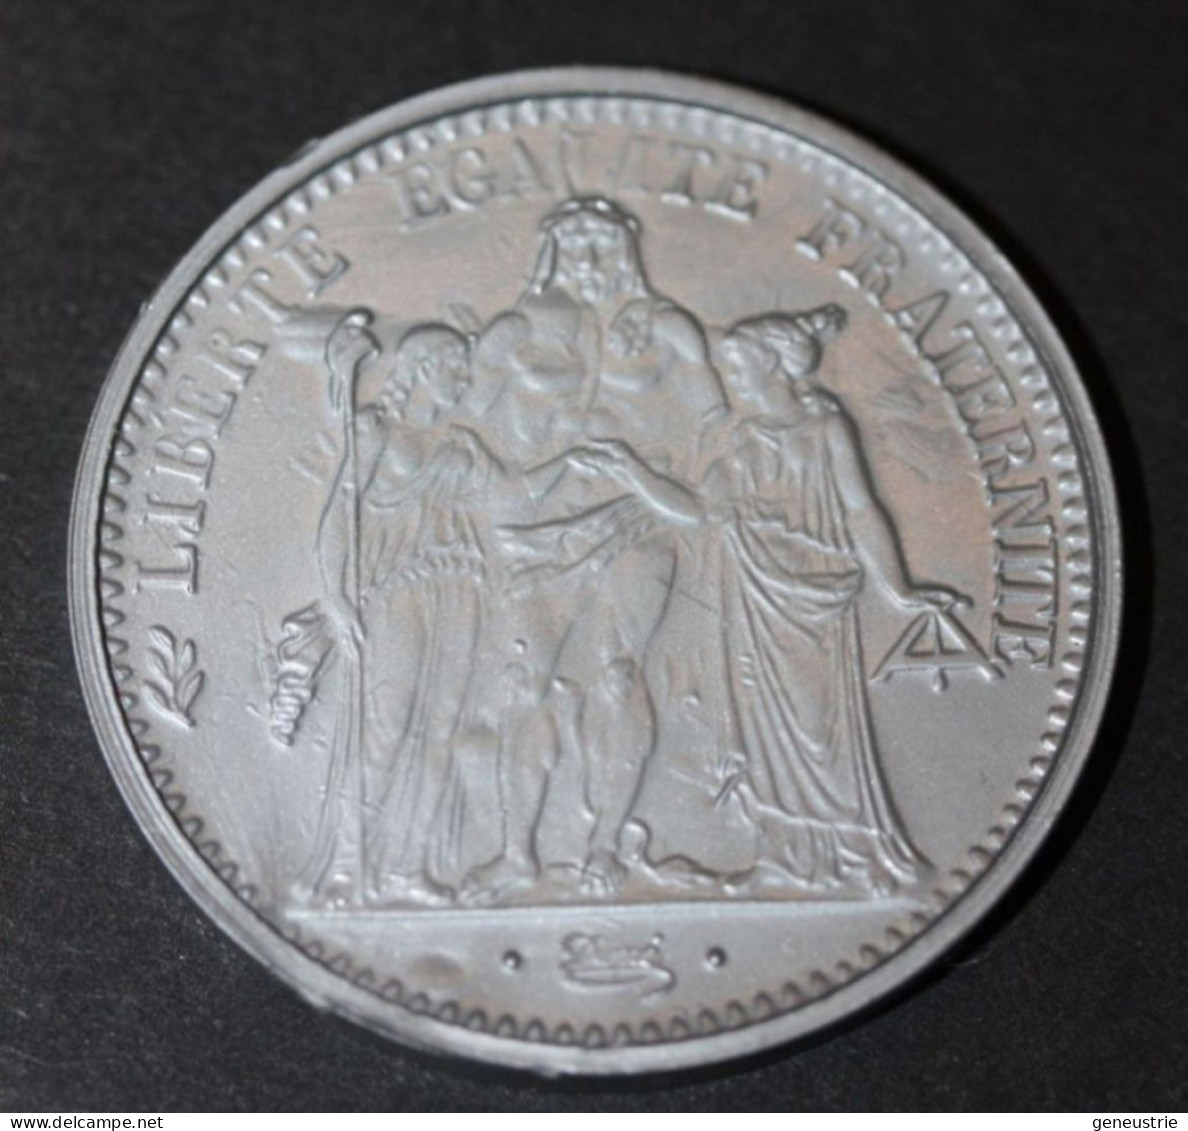 Pièce De 10 Francs Type Hercule 1965 - Jeton Plastique école En Francs Années 60 - Coins School Token - Professionals / Firms